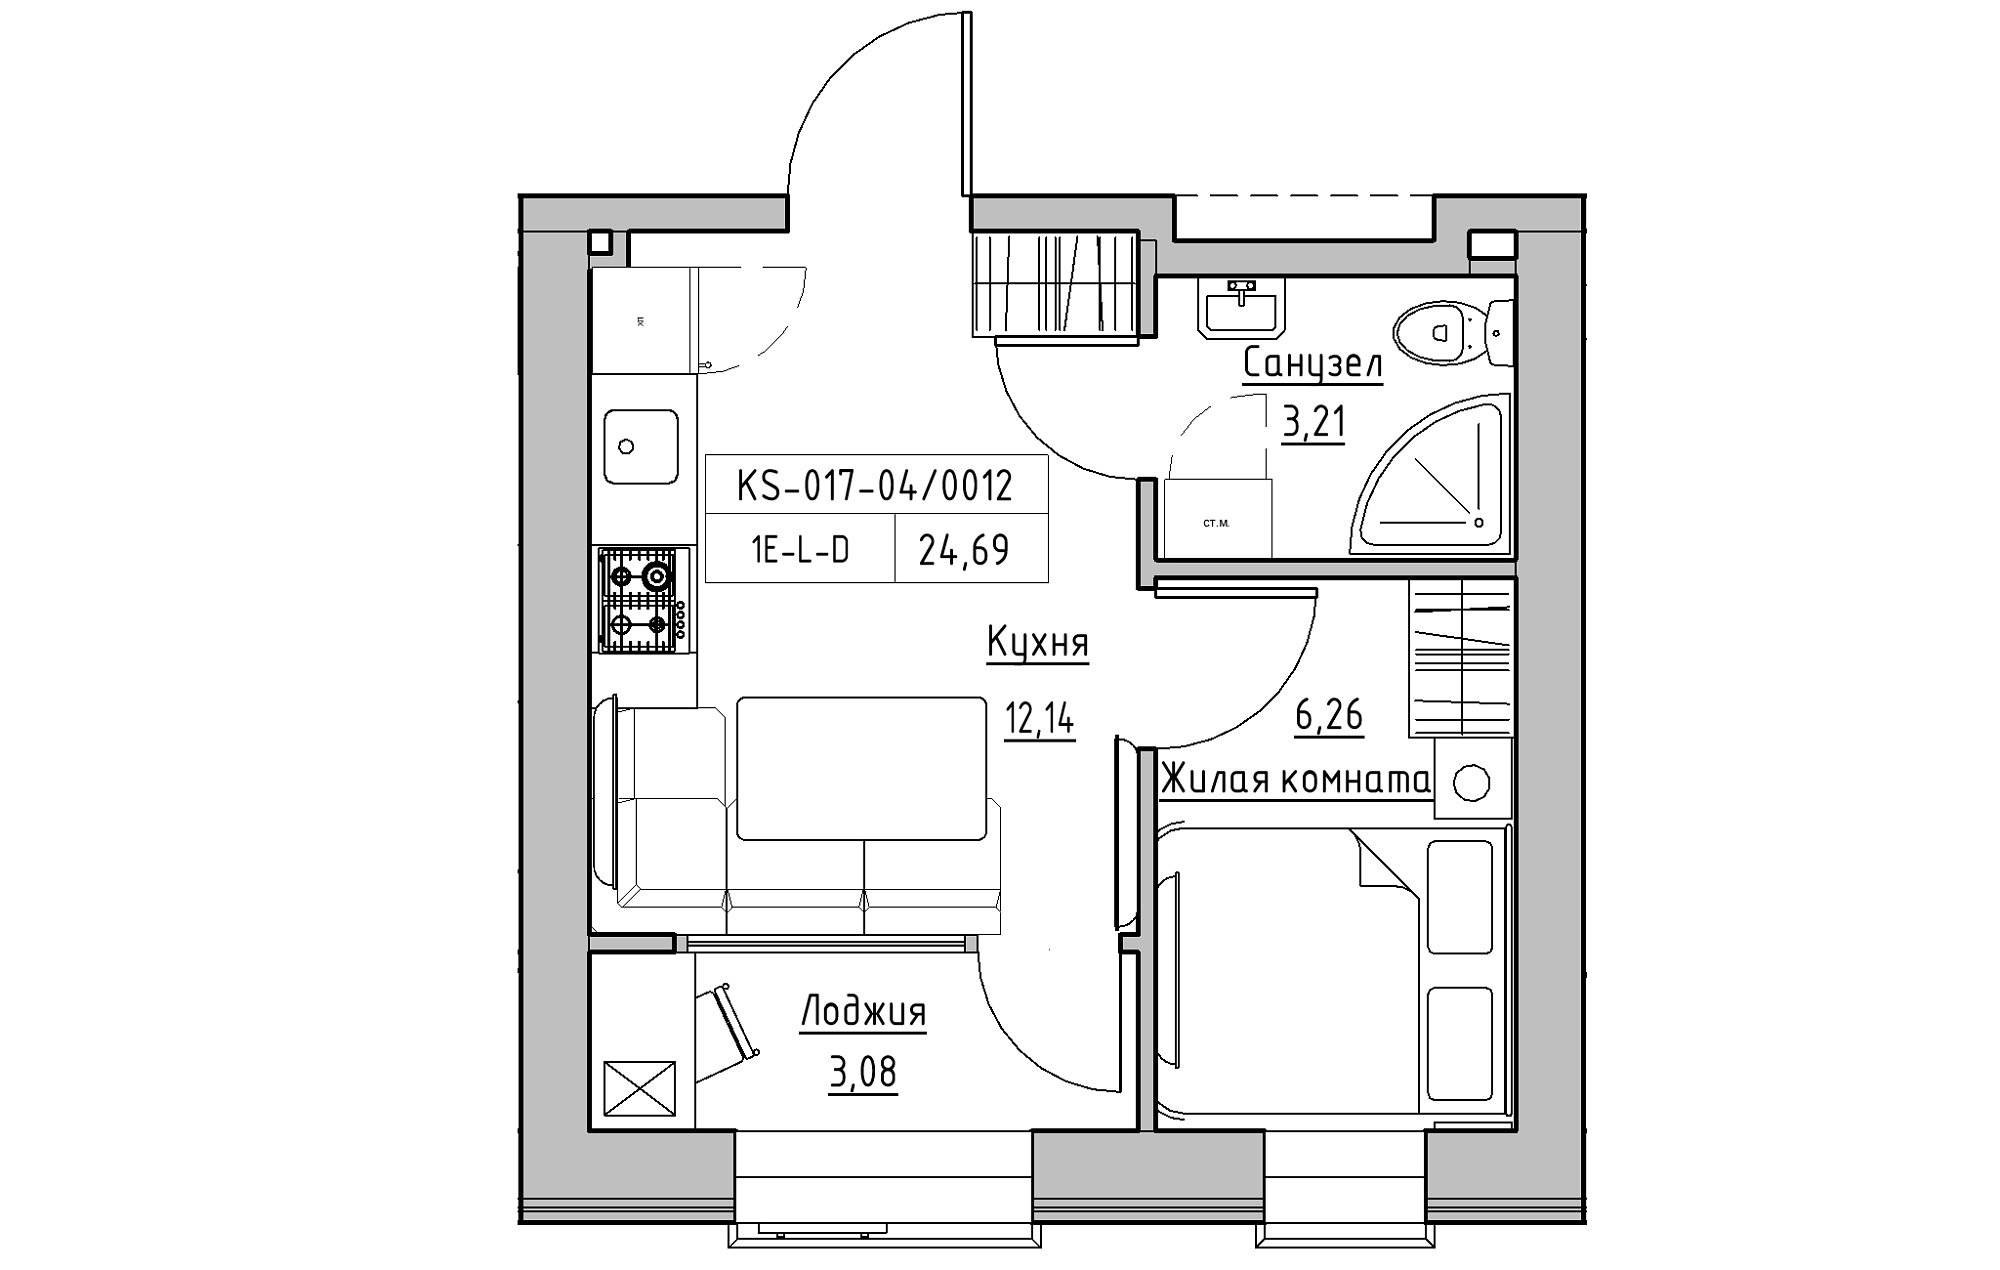 Планування 1-к квартира площею 24.69м2, KS-017-04/0012.